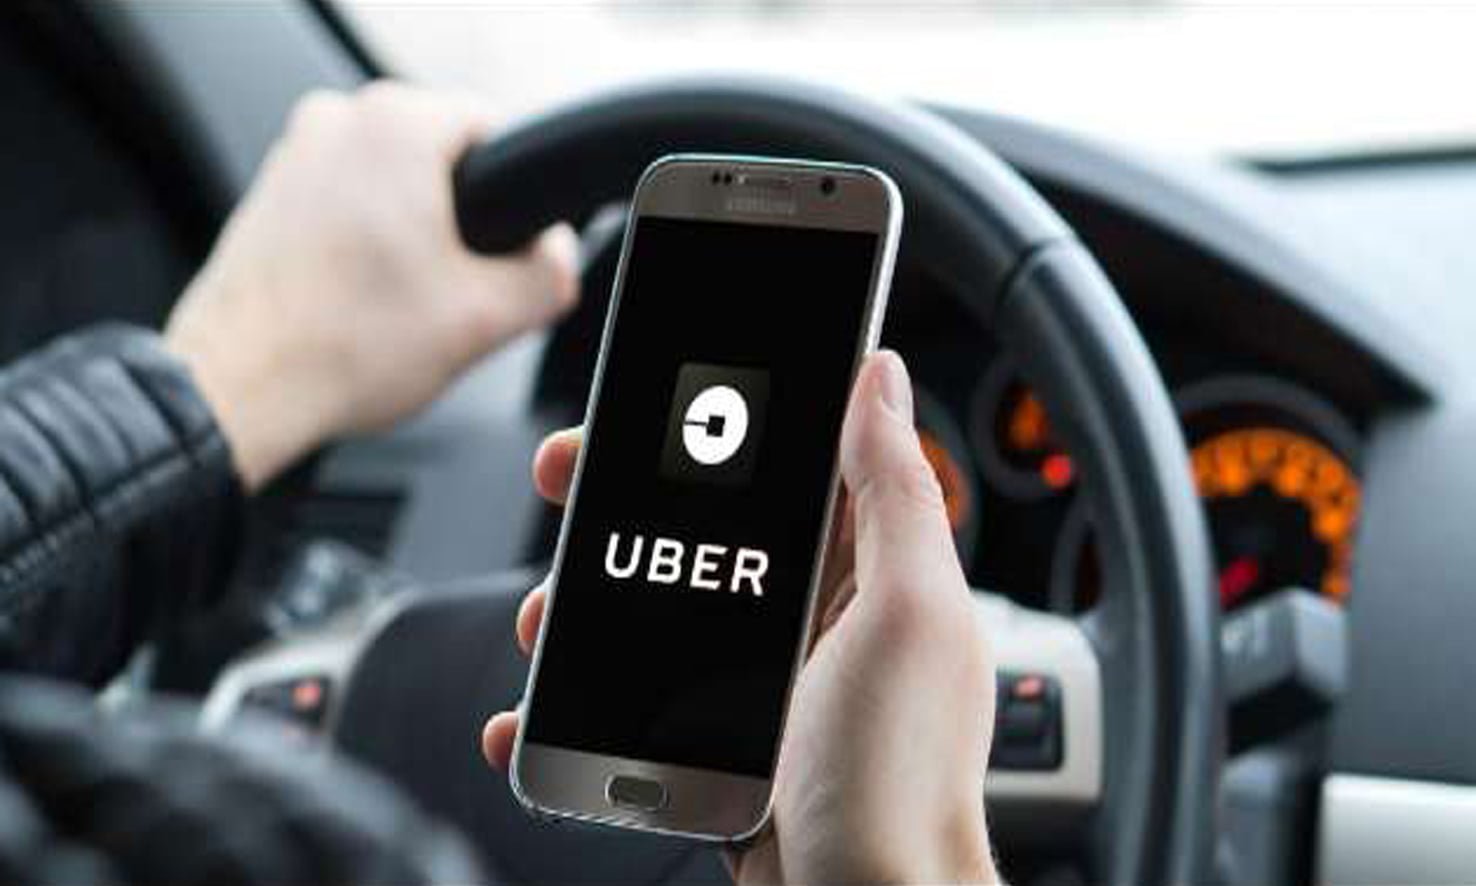 أرقام خدمة عملاء أوبر Uber الأوراق والمستندات المطلوبة للعمل داخل الشركة